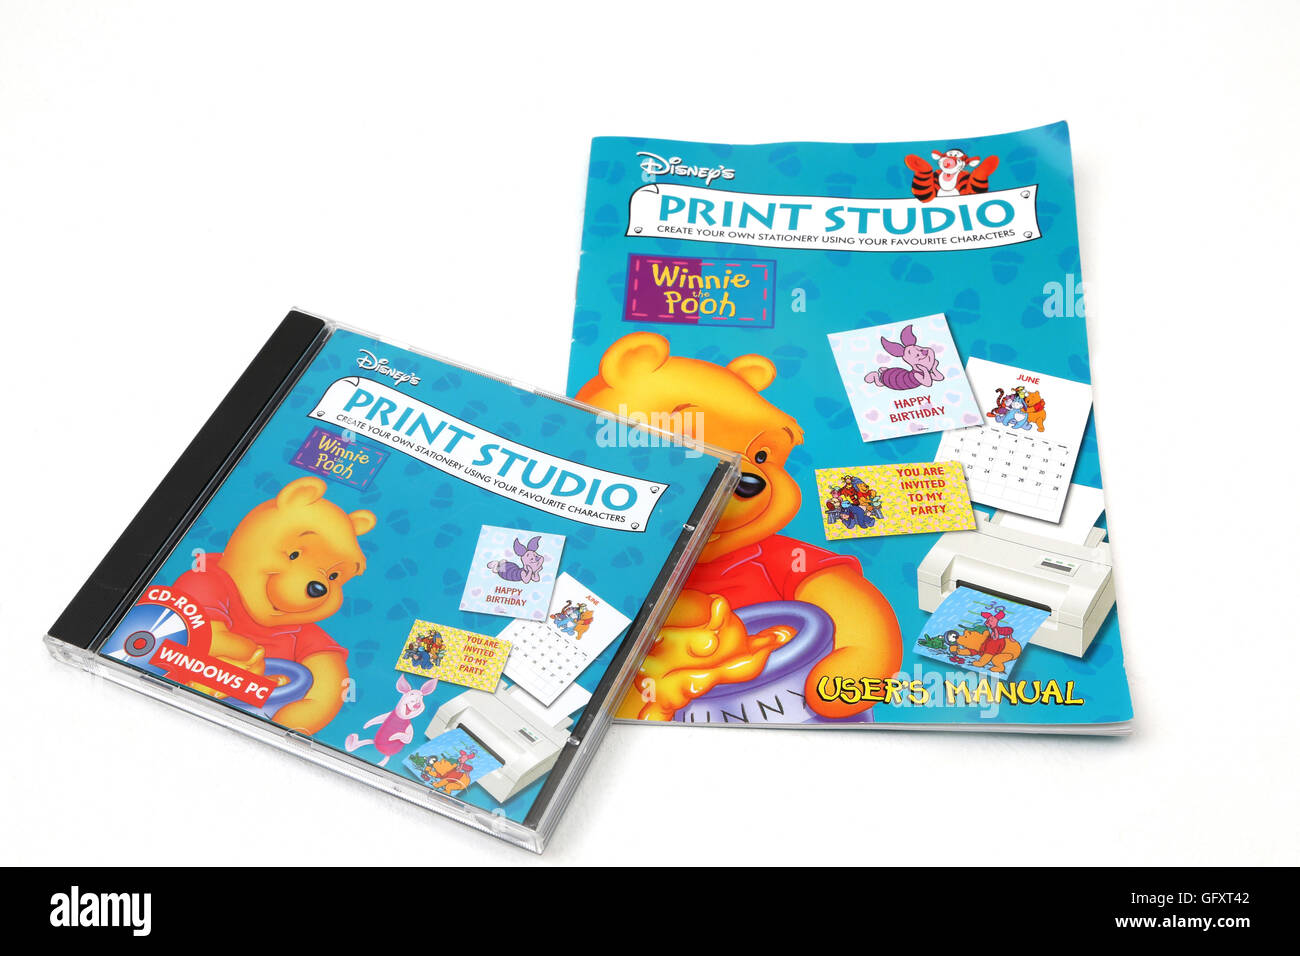 Pooh print studio